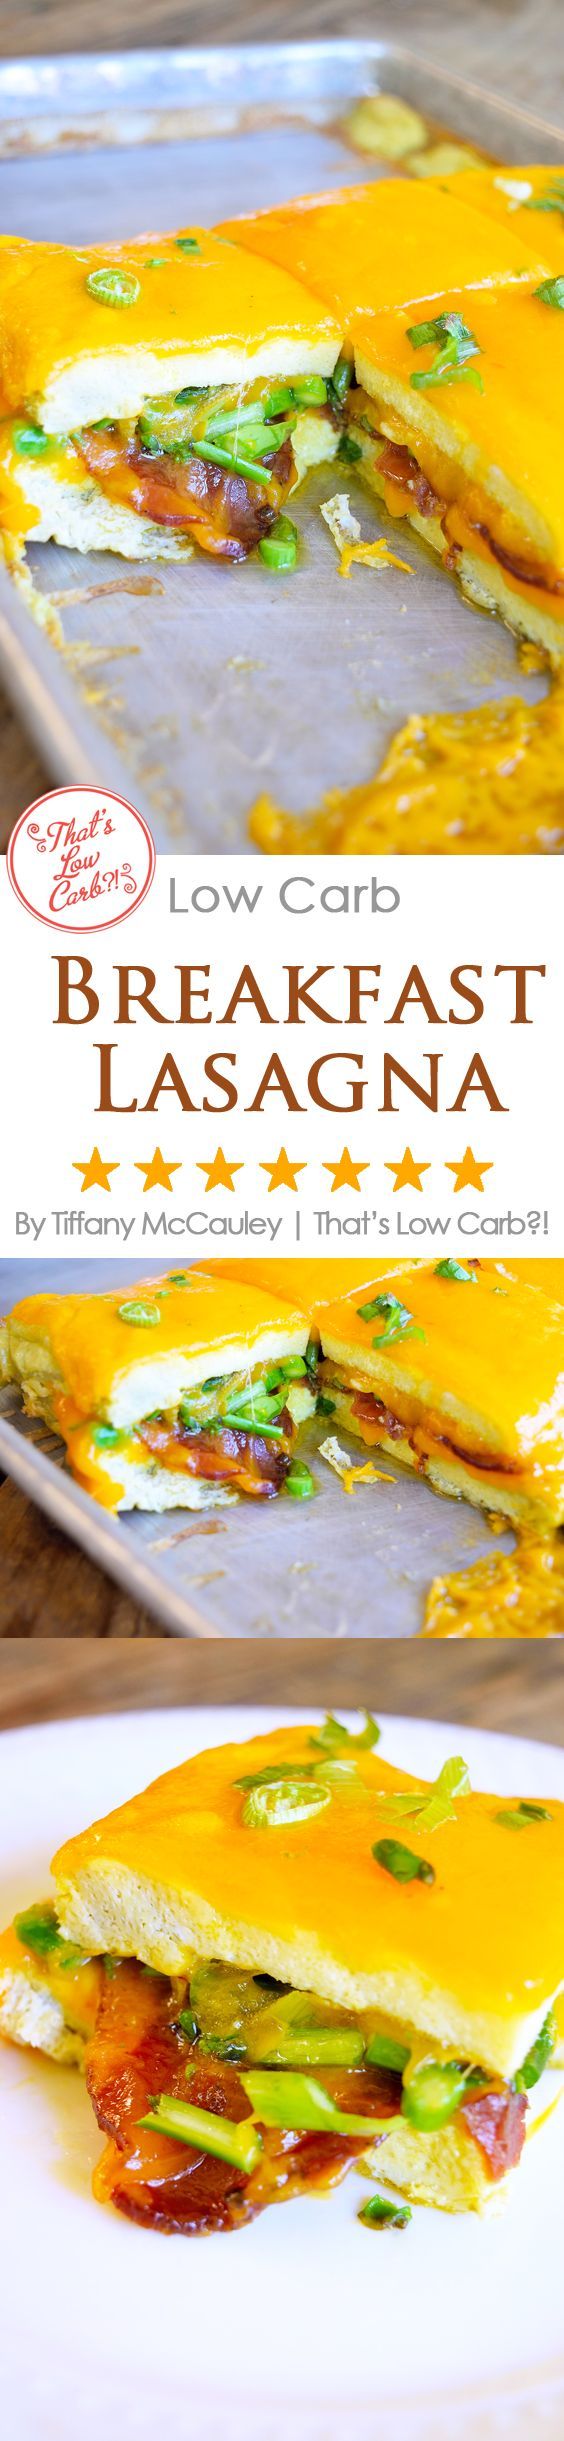 Low Carb Recipes | Breakfast Lasagna Recipe | Egg Recipes | Breakfast Recipes | Low Carb ~ https://www.thatslowcarb.com